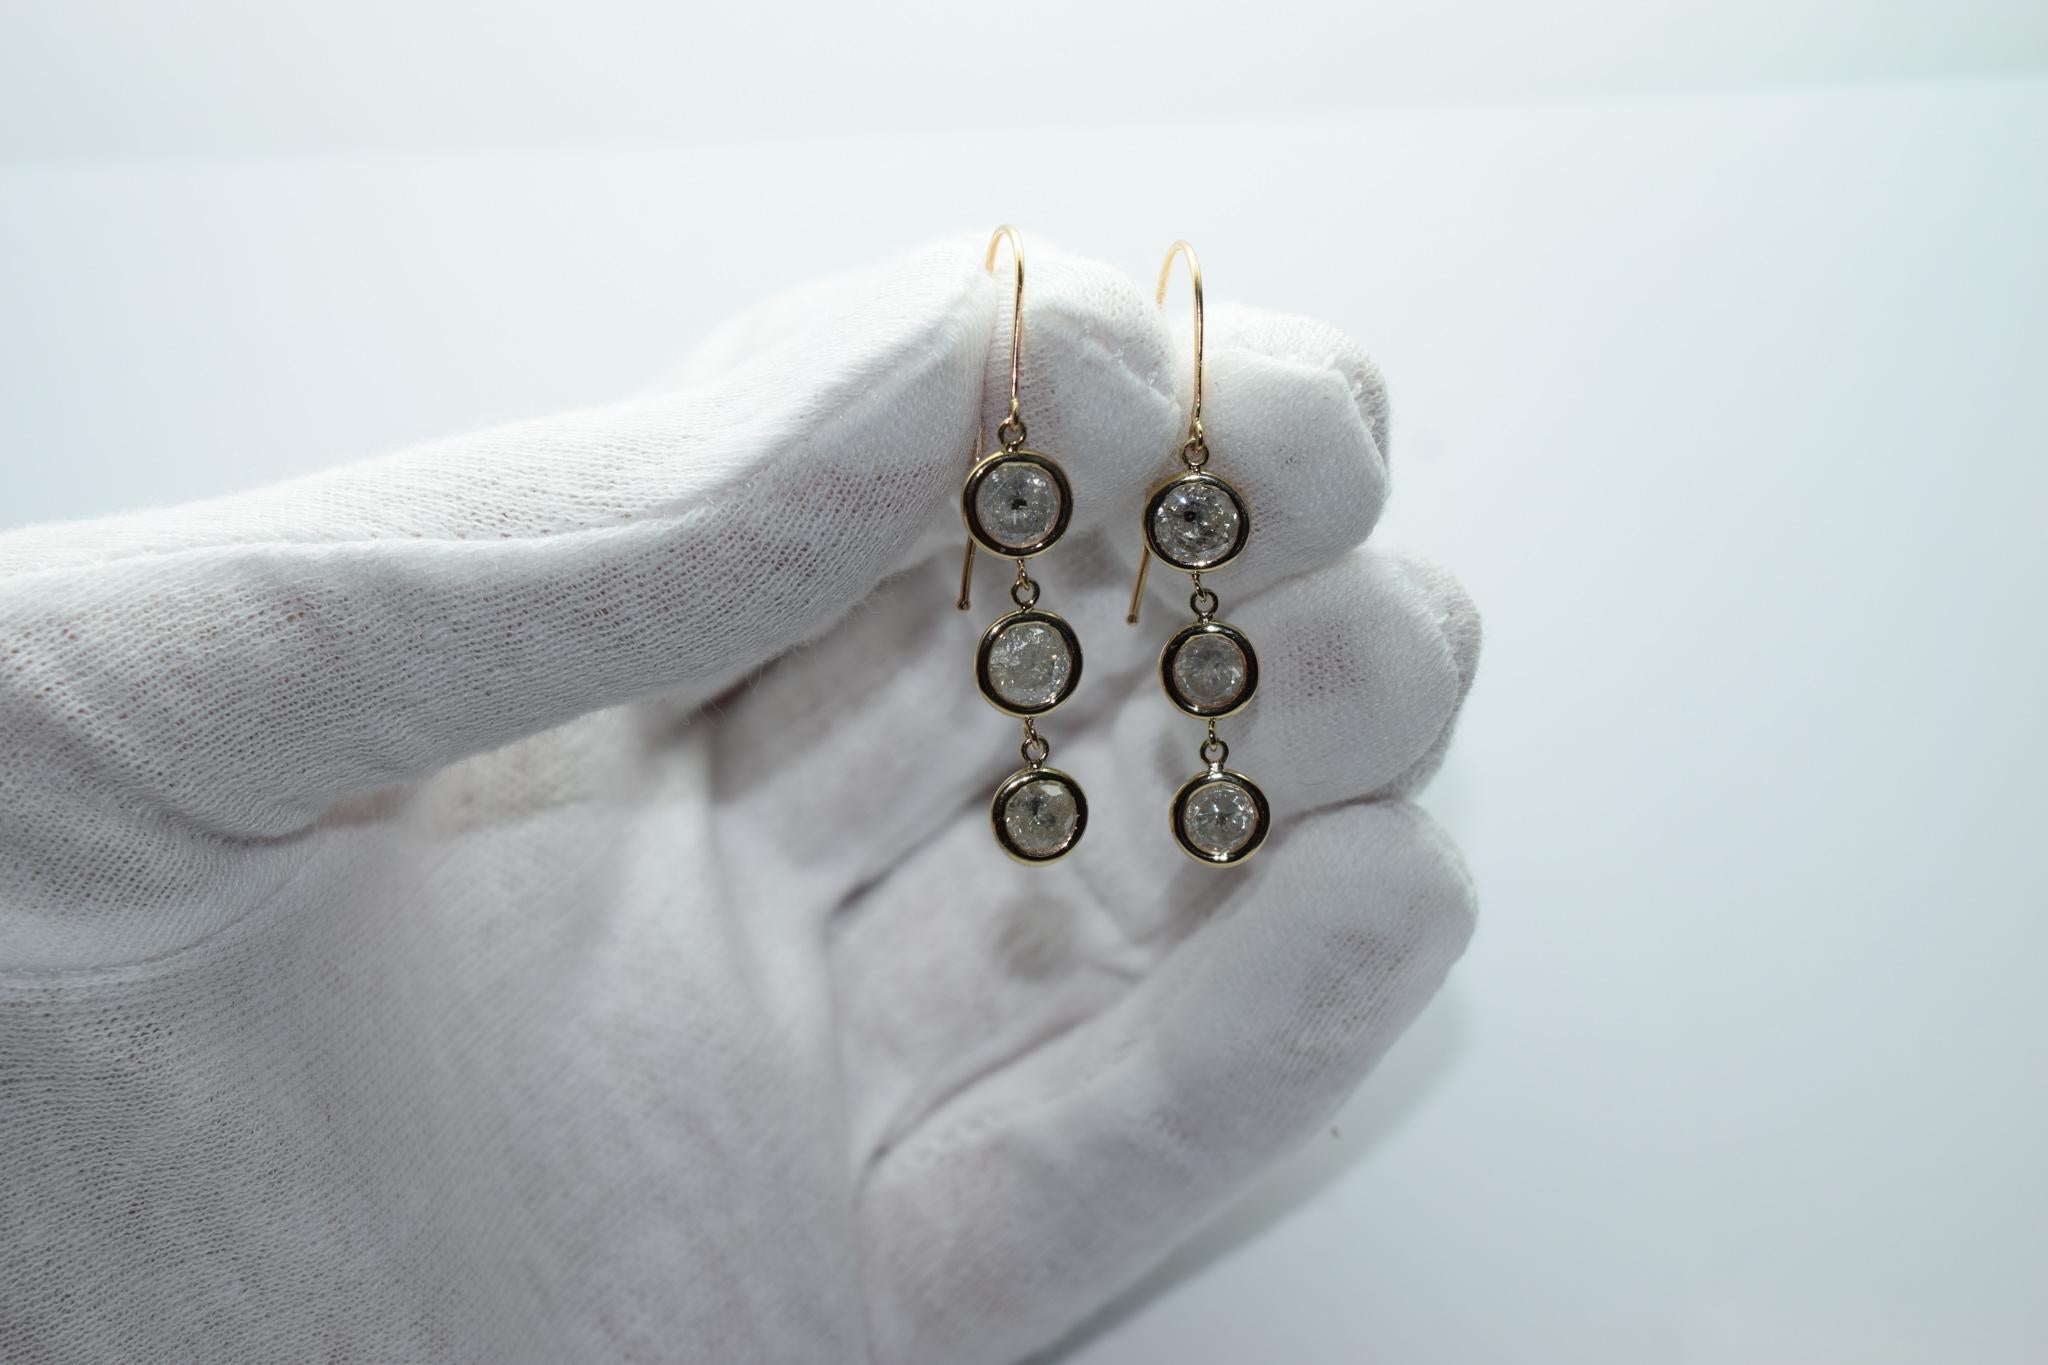 Salt and pepper diamond earrings 4ct diamond earrings dangling 14KT gold For Sale 2